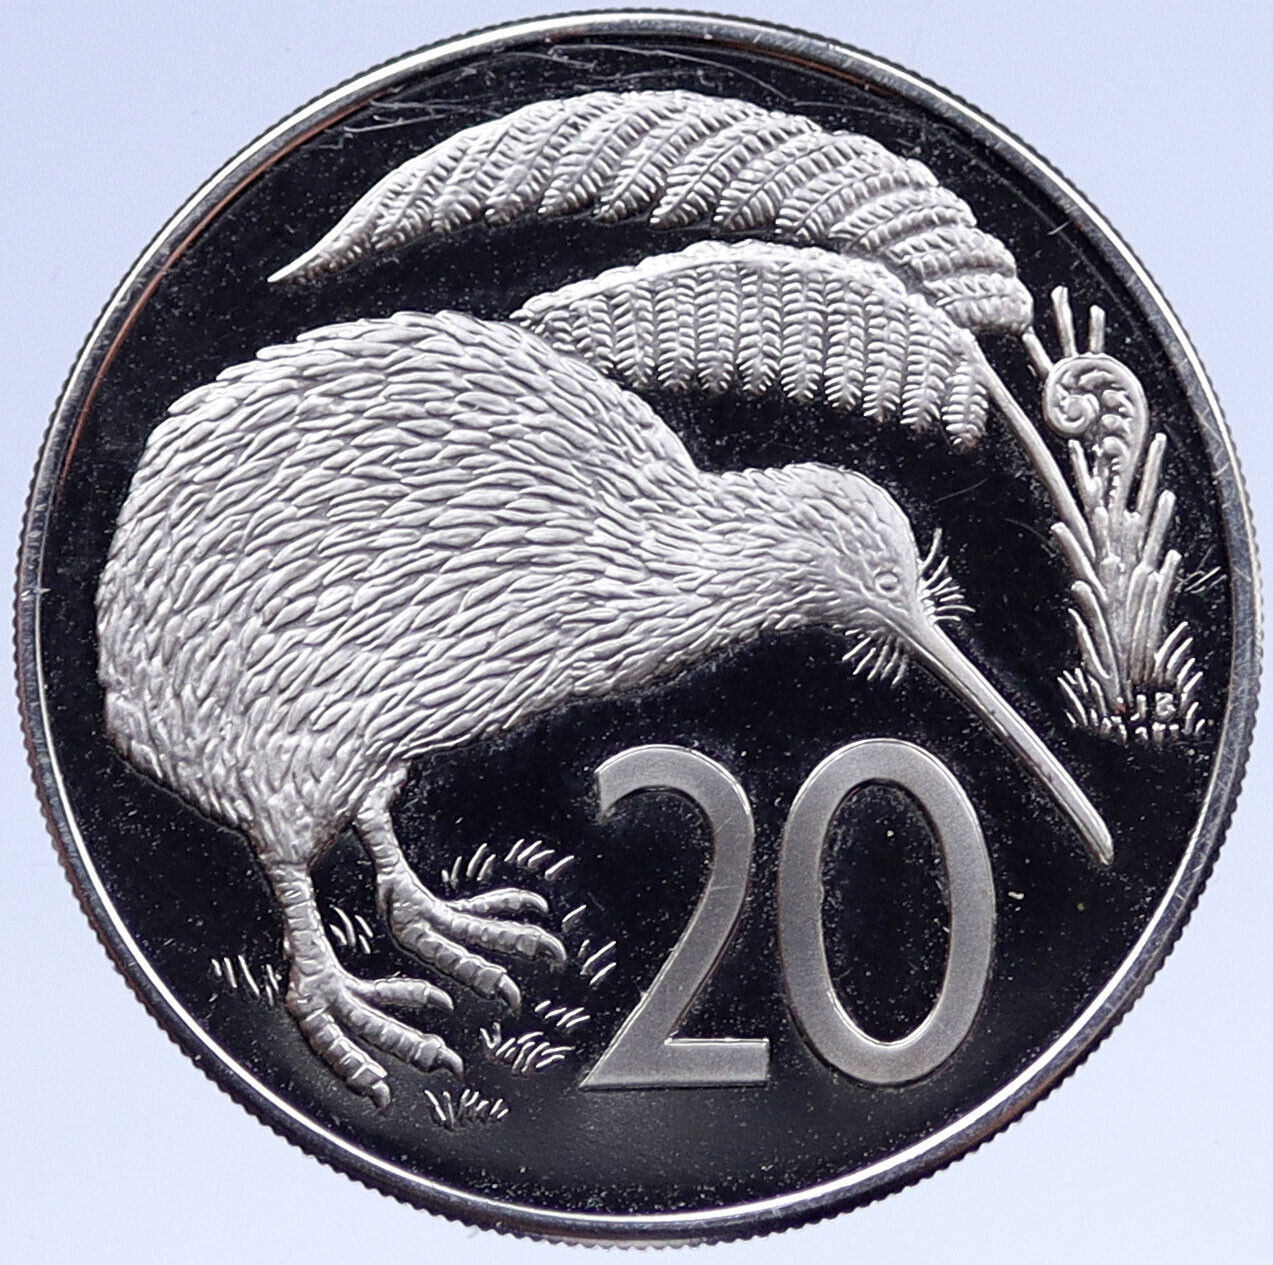 1974 NEW ZEALAND Proof 20 Cents UK QUEEN Elizabeth II Coin KIWI BIRD i119373